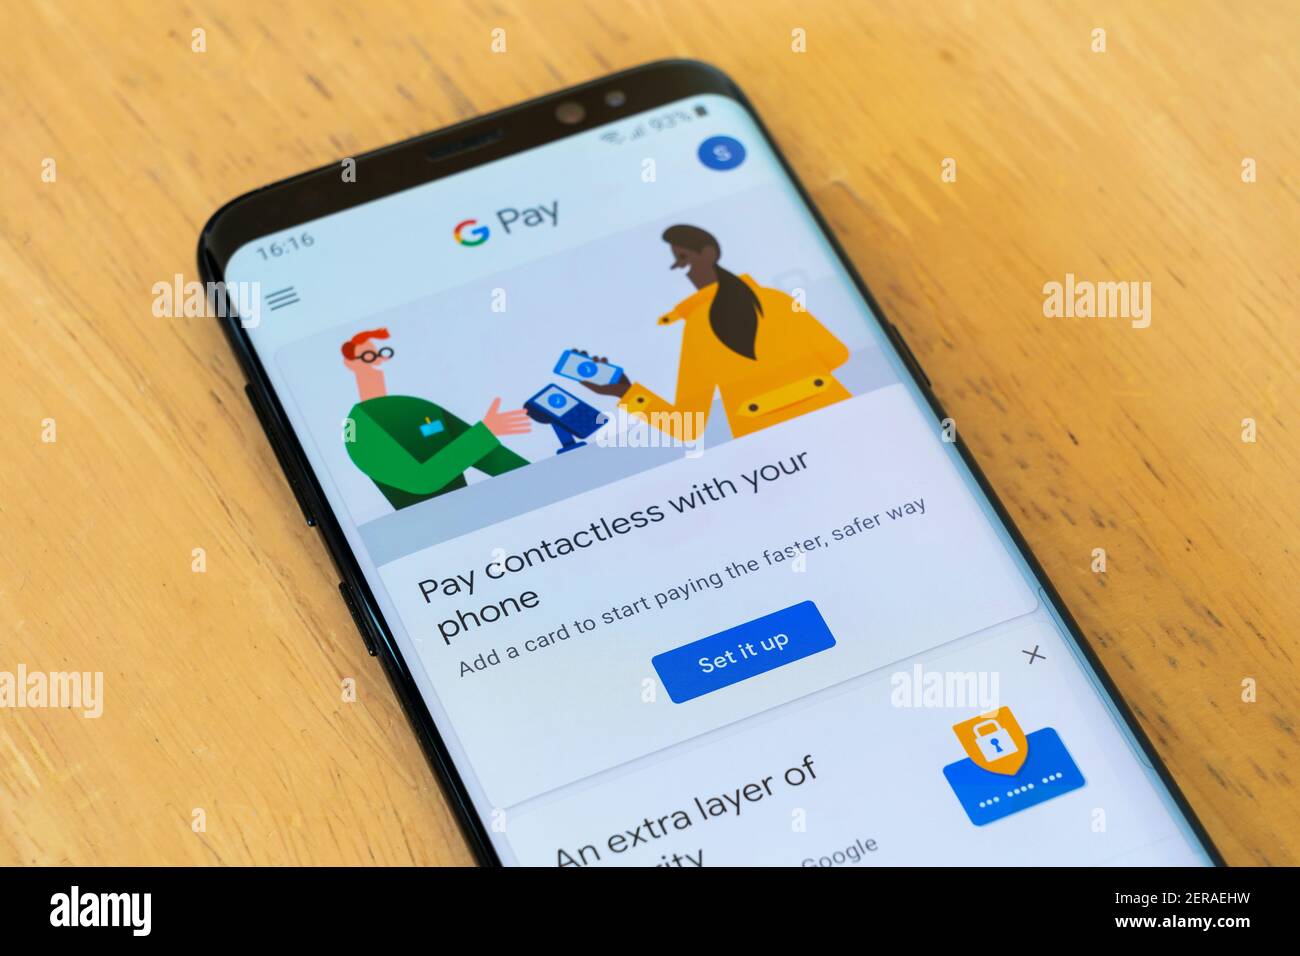 Acepta pagos de Google Pay en tu tienda online